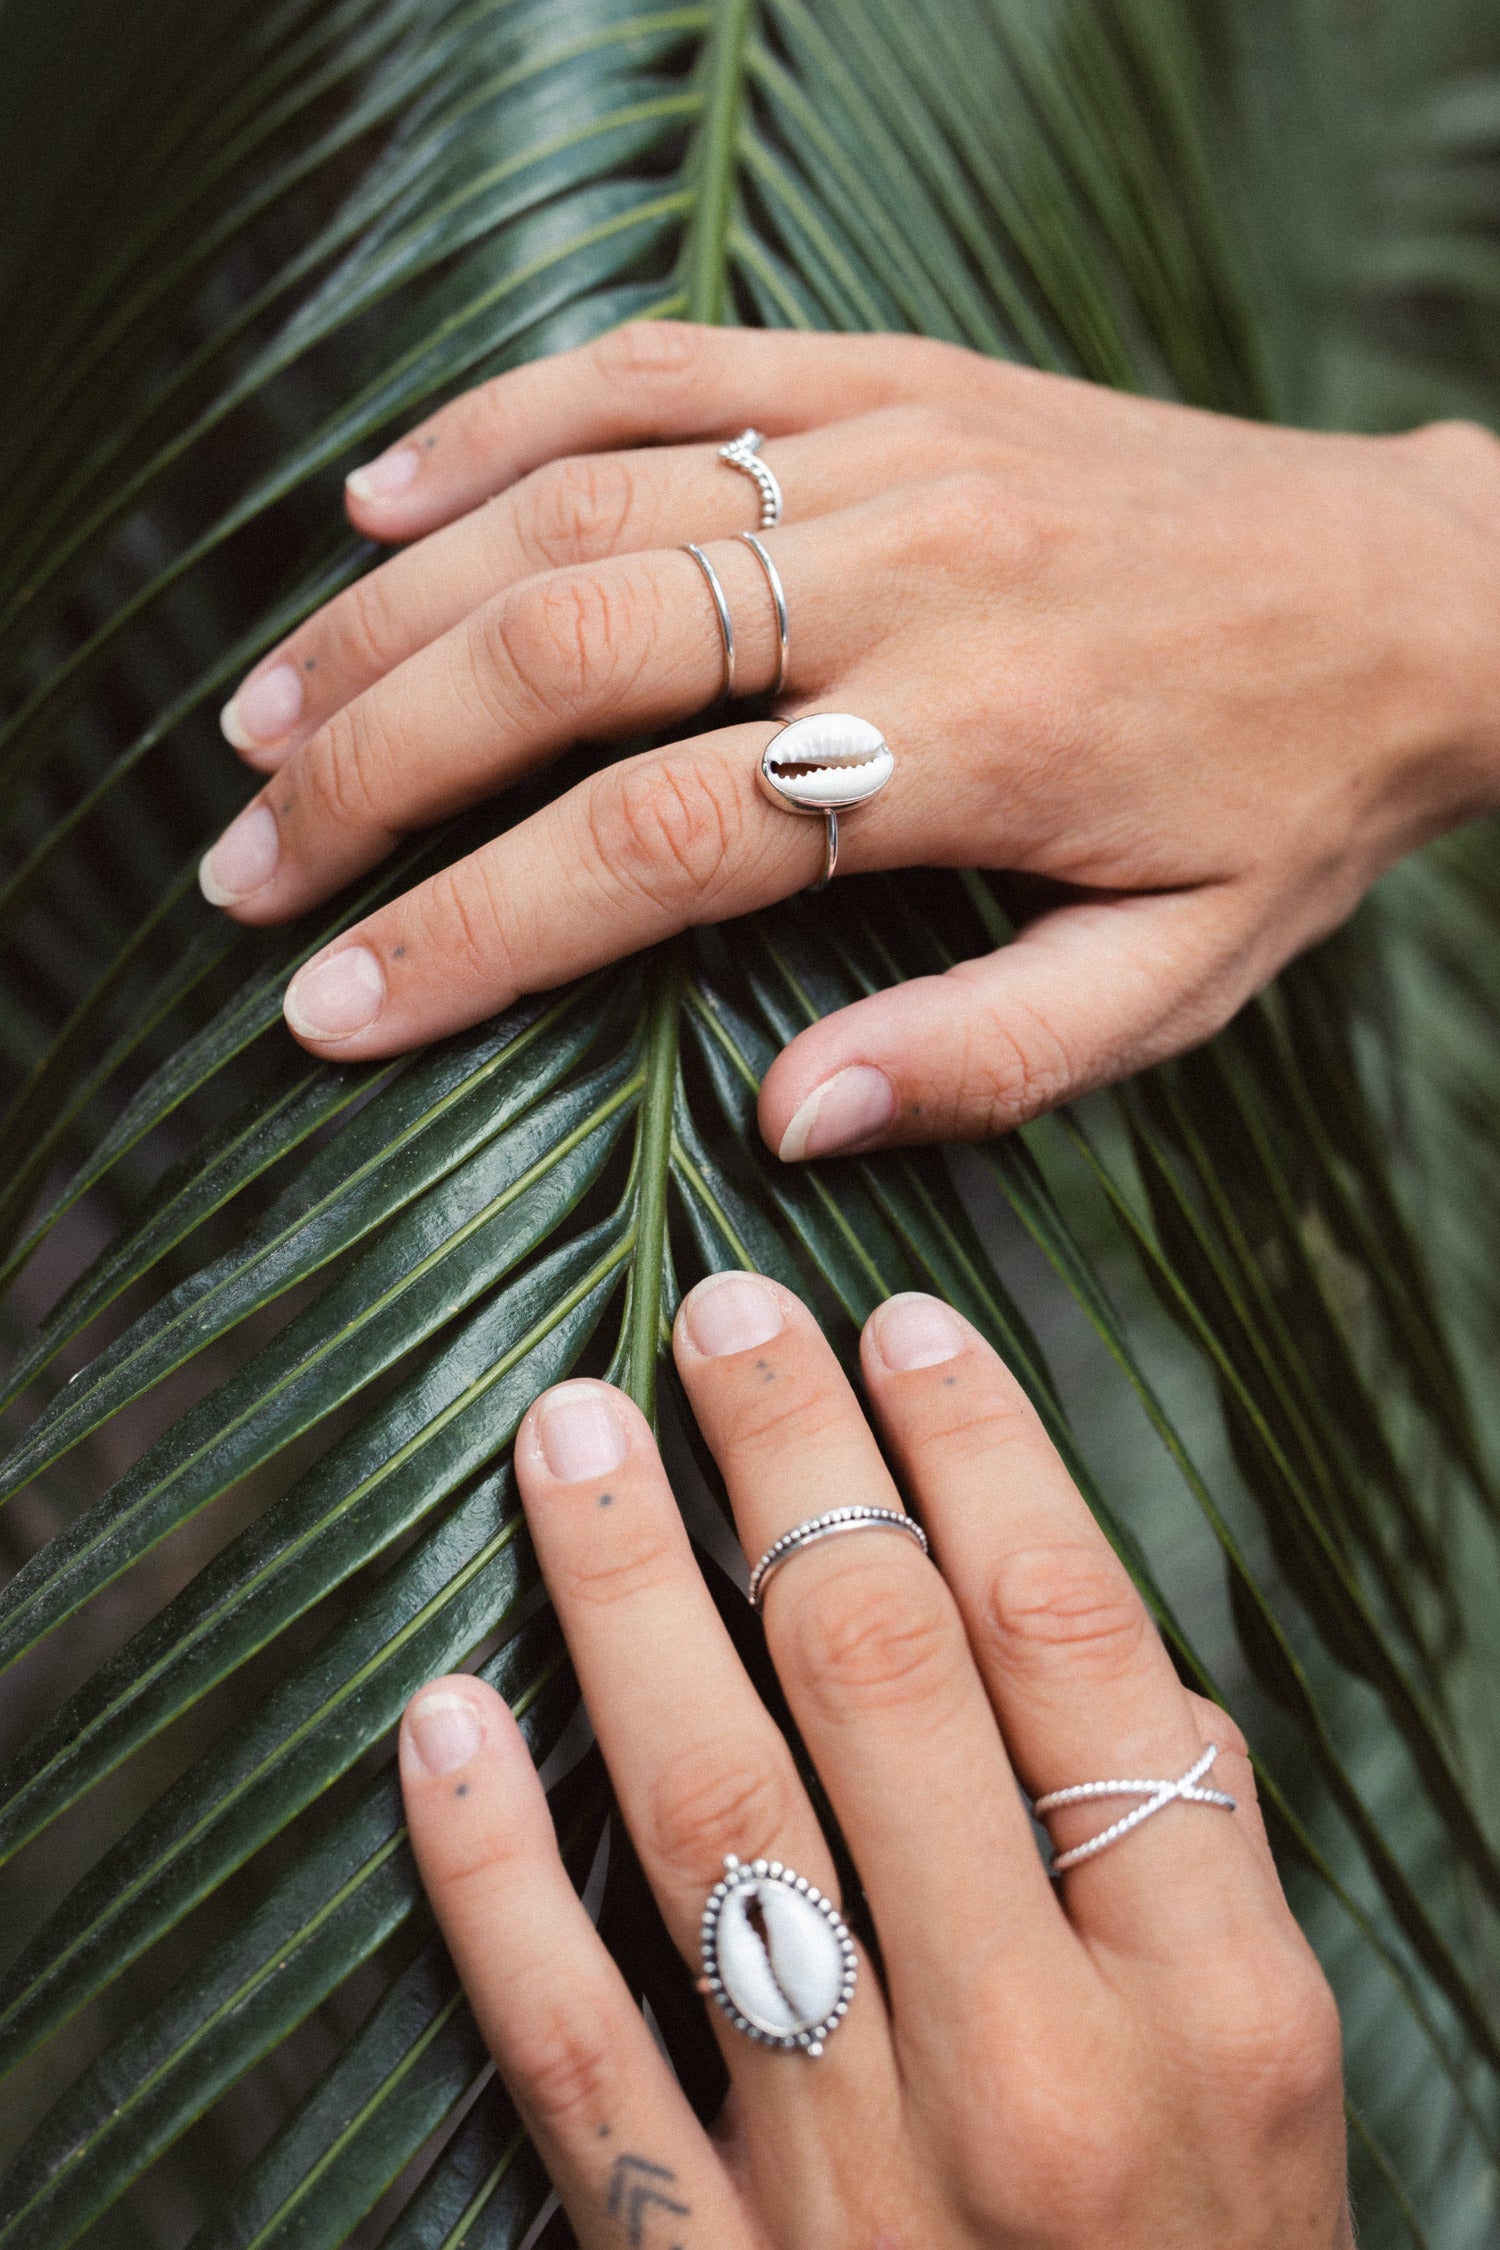 Handmade with love | VERLAN Jewellery | Fairfashion | Handgemachte Ringe im Boho Look aus Bali | Fair und nachhaltig handgefertigter Schmuck | Verstellbarer Ring | Kombi & adjustable Ring | Perfekt um ihn an jedem Finger zu tragen